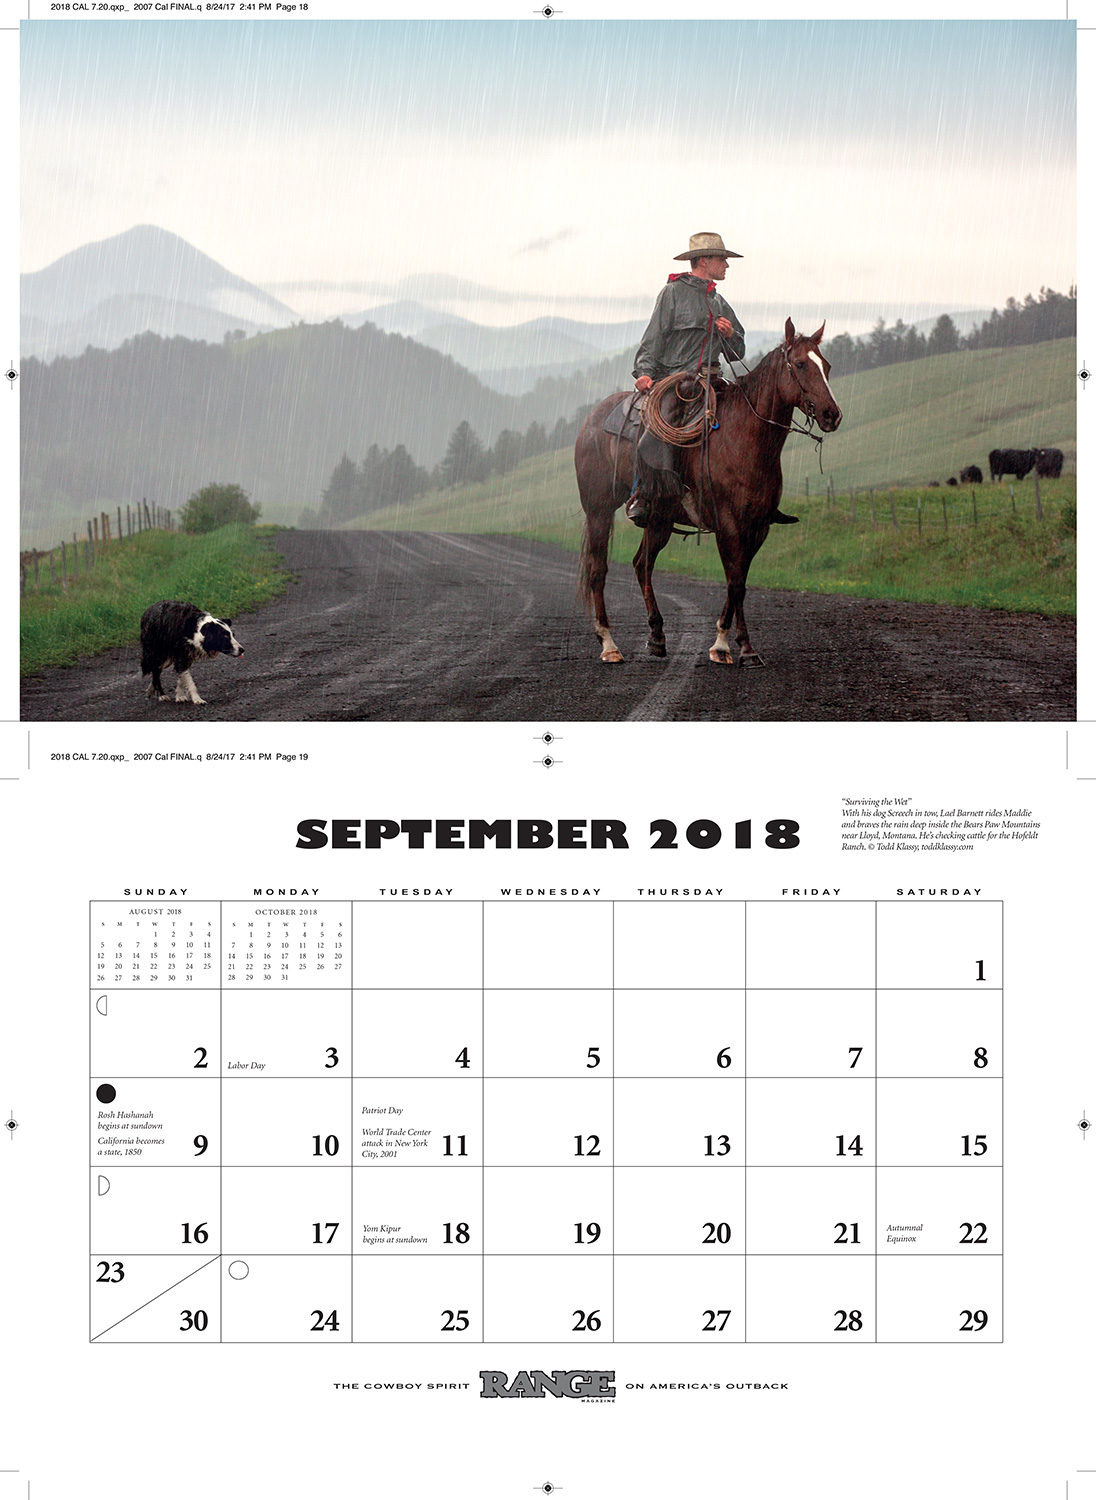 Range-Magazine-2018-Calendar-September-20170824-Small.jpg